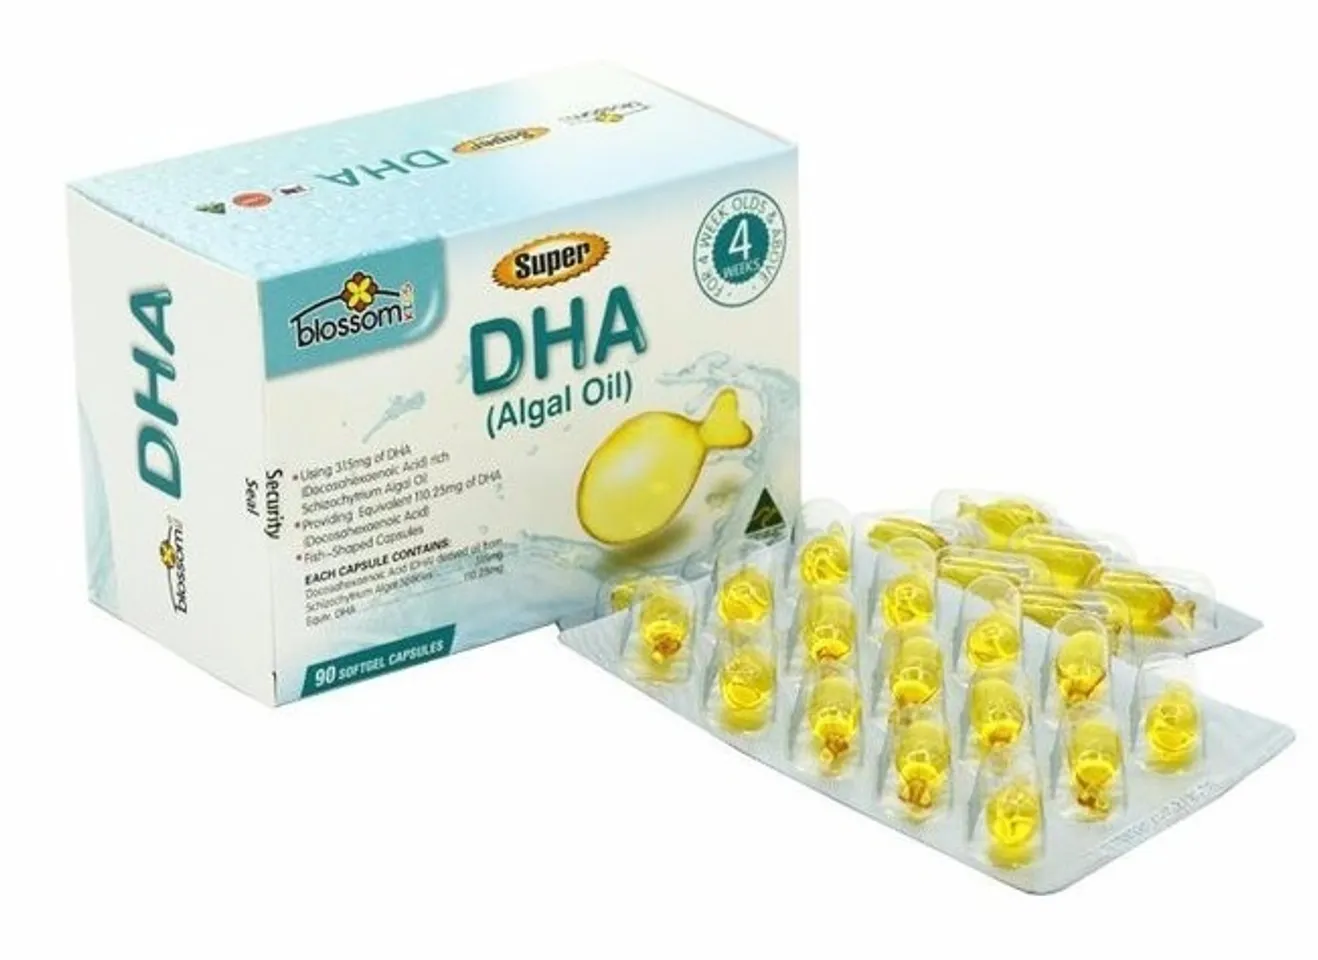 Super DHA Blossom Úc bổ sung DHA cho trẻ trên 1 tháng tuổi